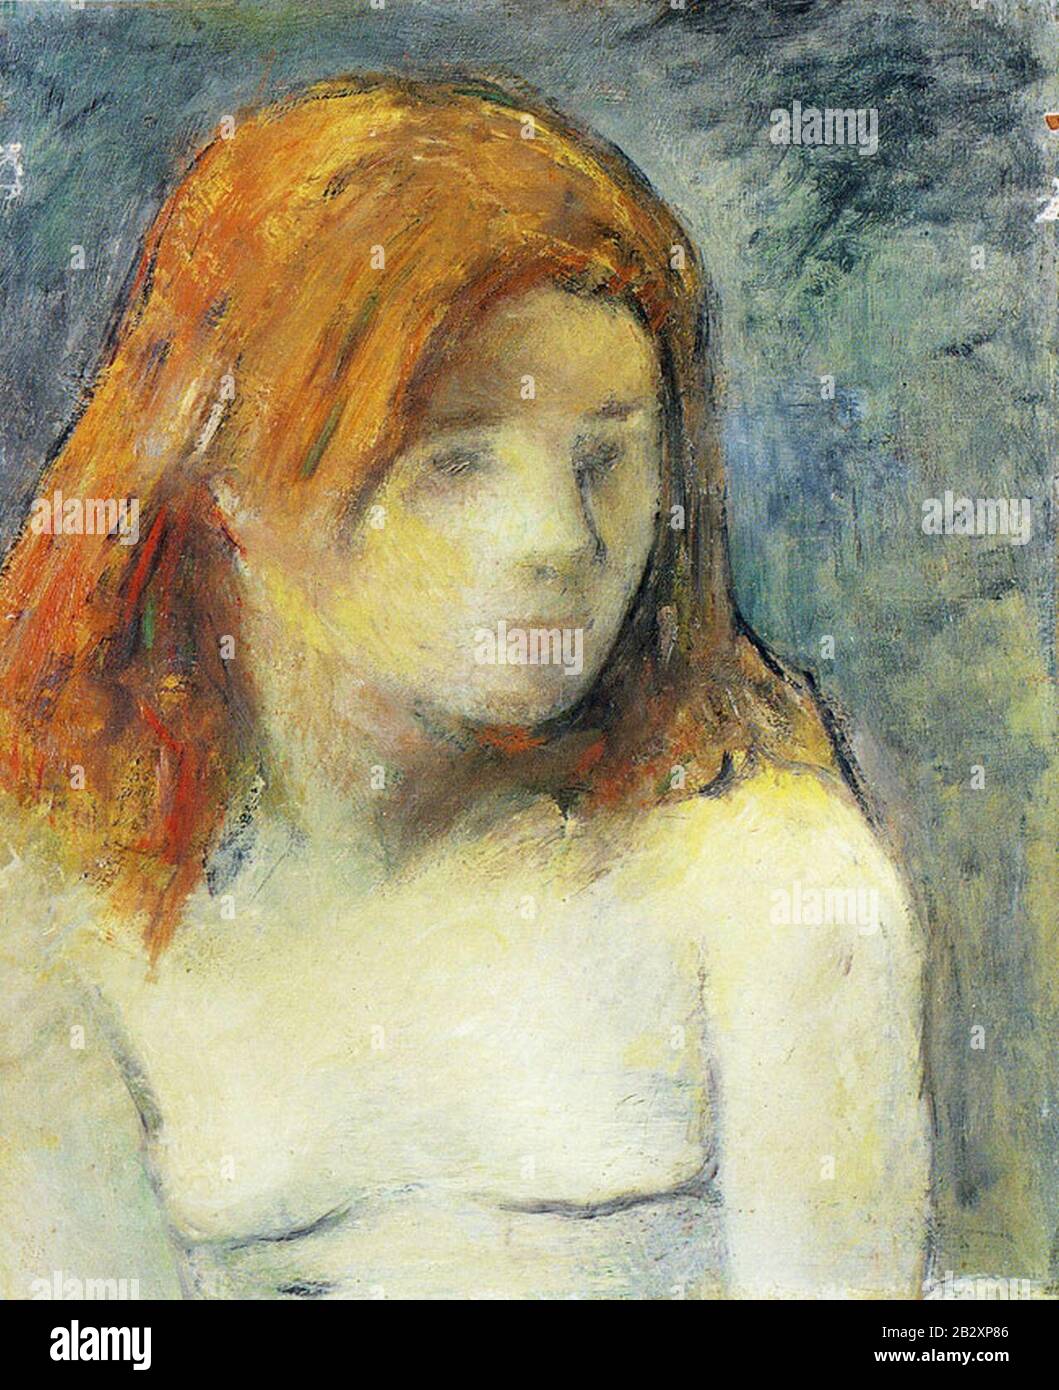 Gauguin 1884 Buste d'adolescente nue. Foto de stock